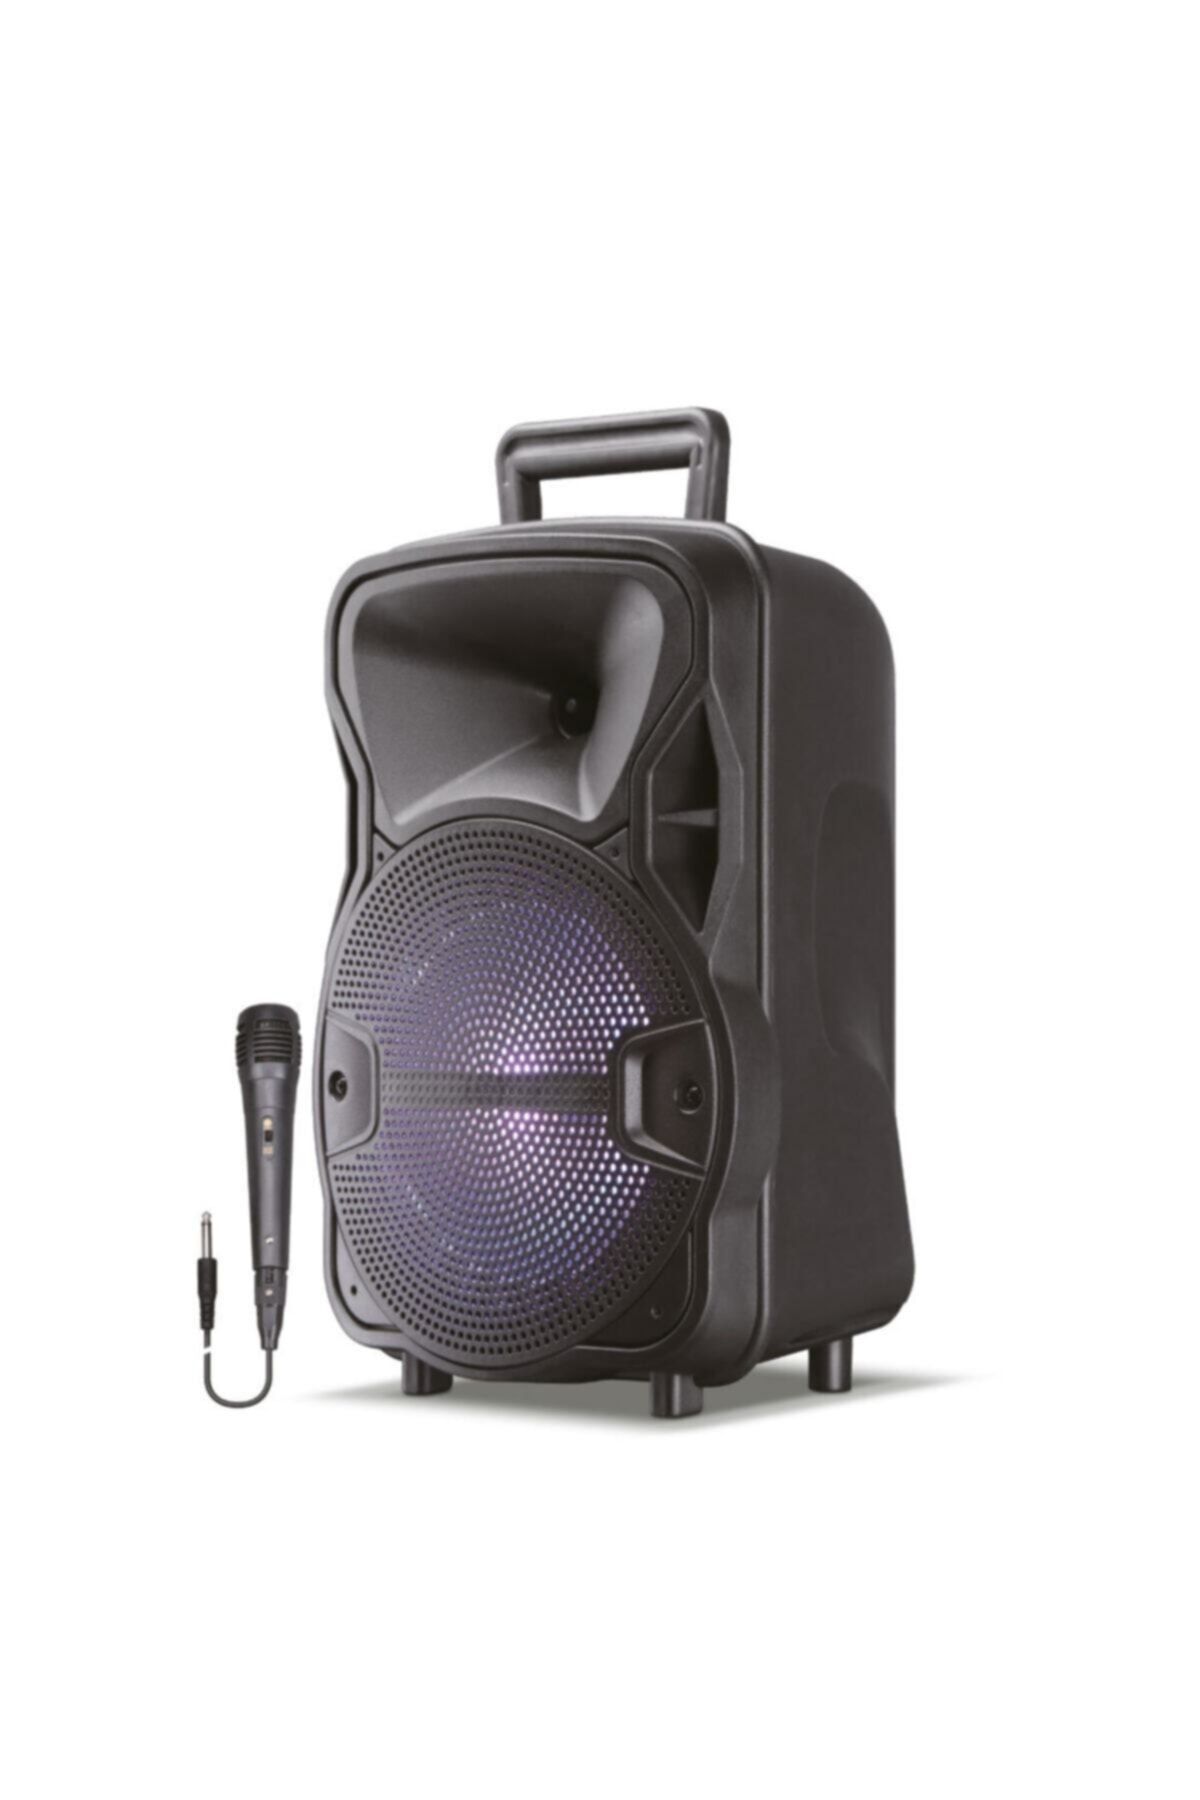 Dynego Kensa K-188 Bluetooth Taşınabilir Mikrofonlu Karaoke Led Işıklı Speaker Hoparlör Ultra Ses Sistemi